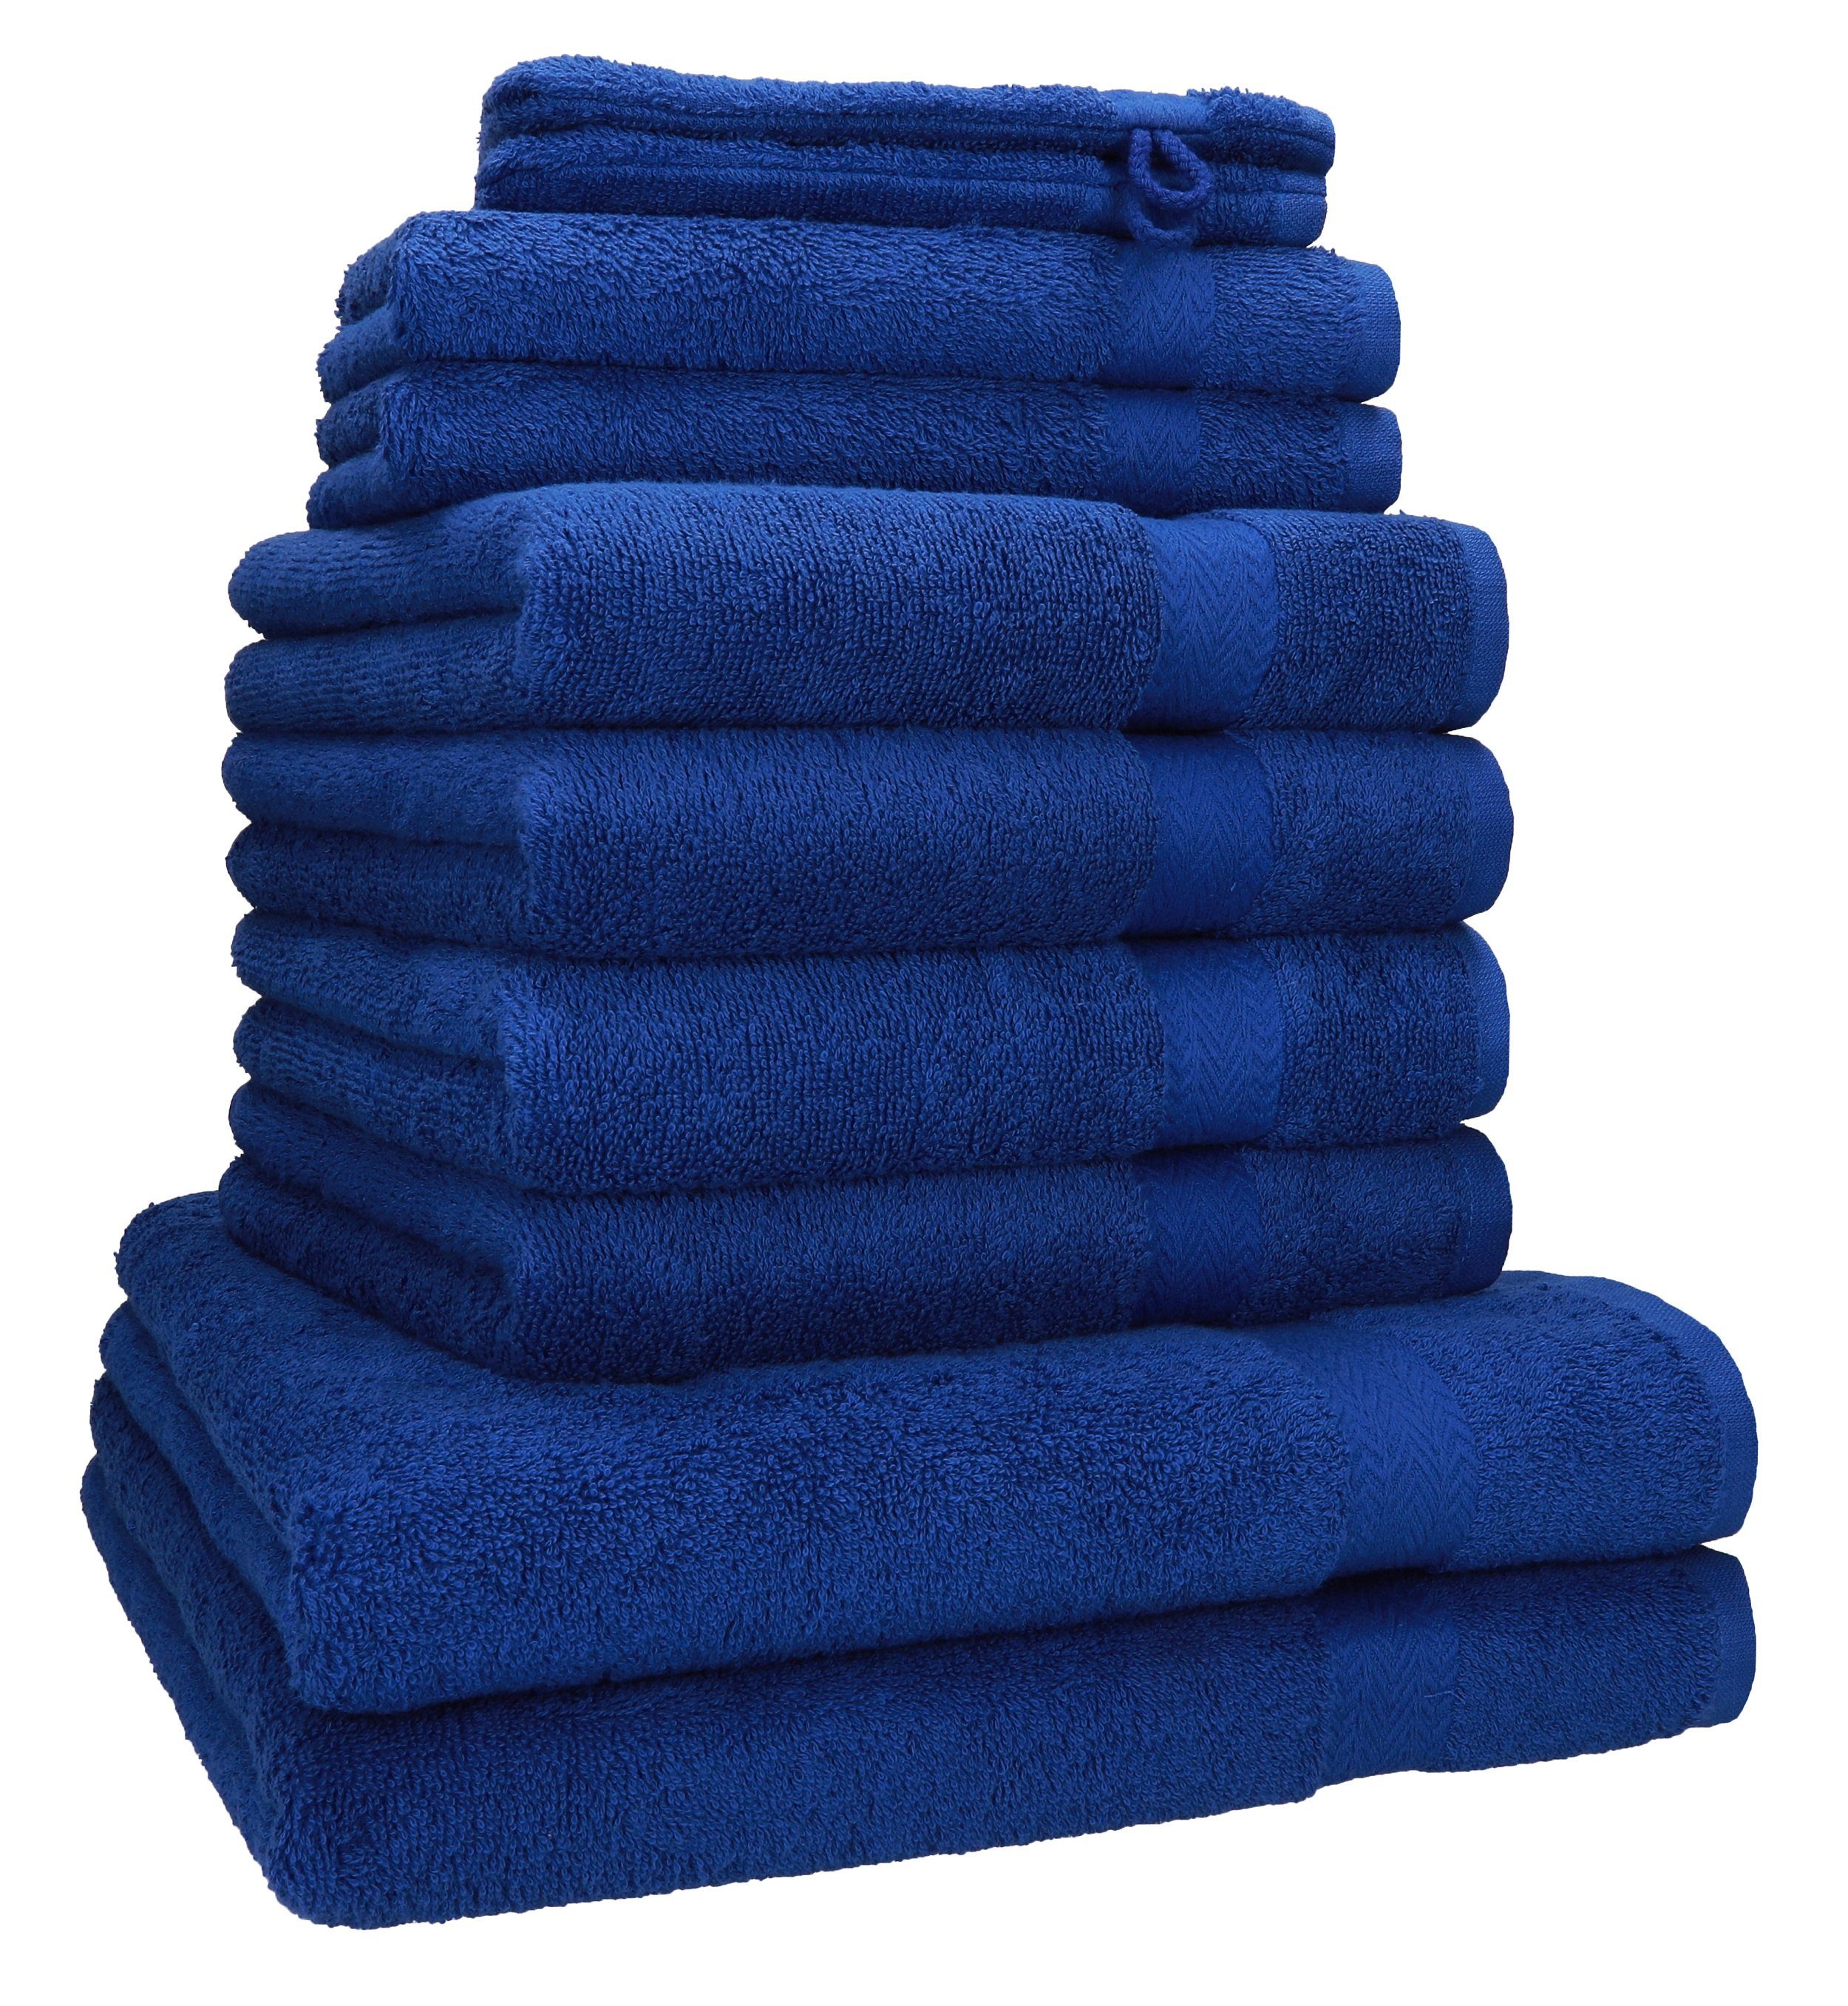 Betz Handtuch Set 10-tlg. Handtuch-Set 100% royalblau PREMIUM Baumwolle, (10-tlg) 100% Baumwolle